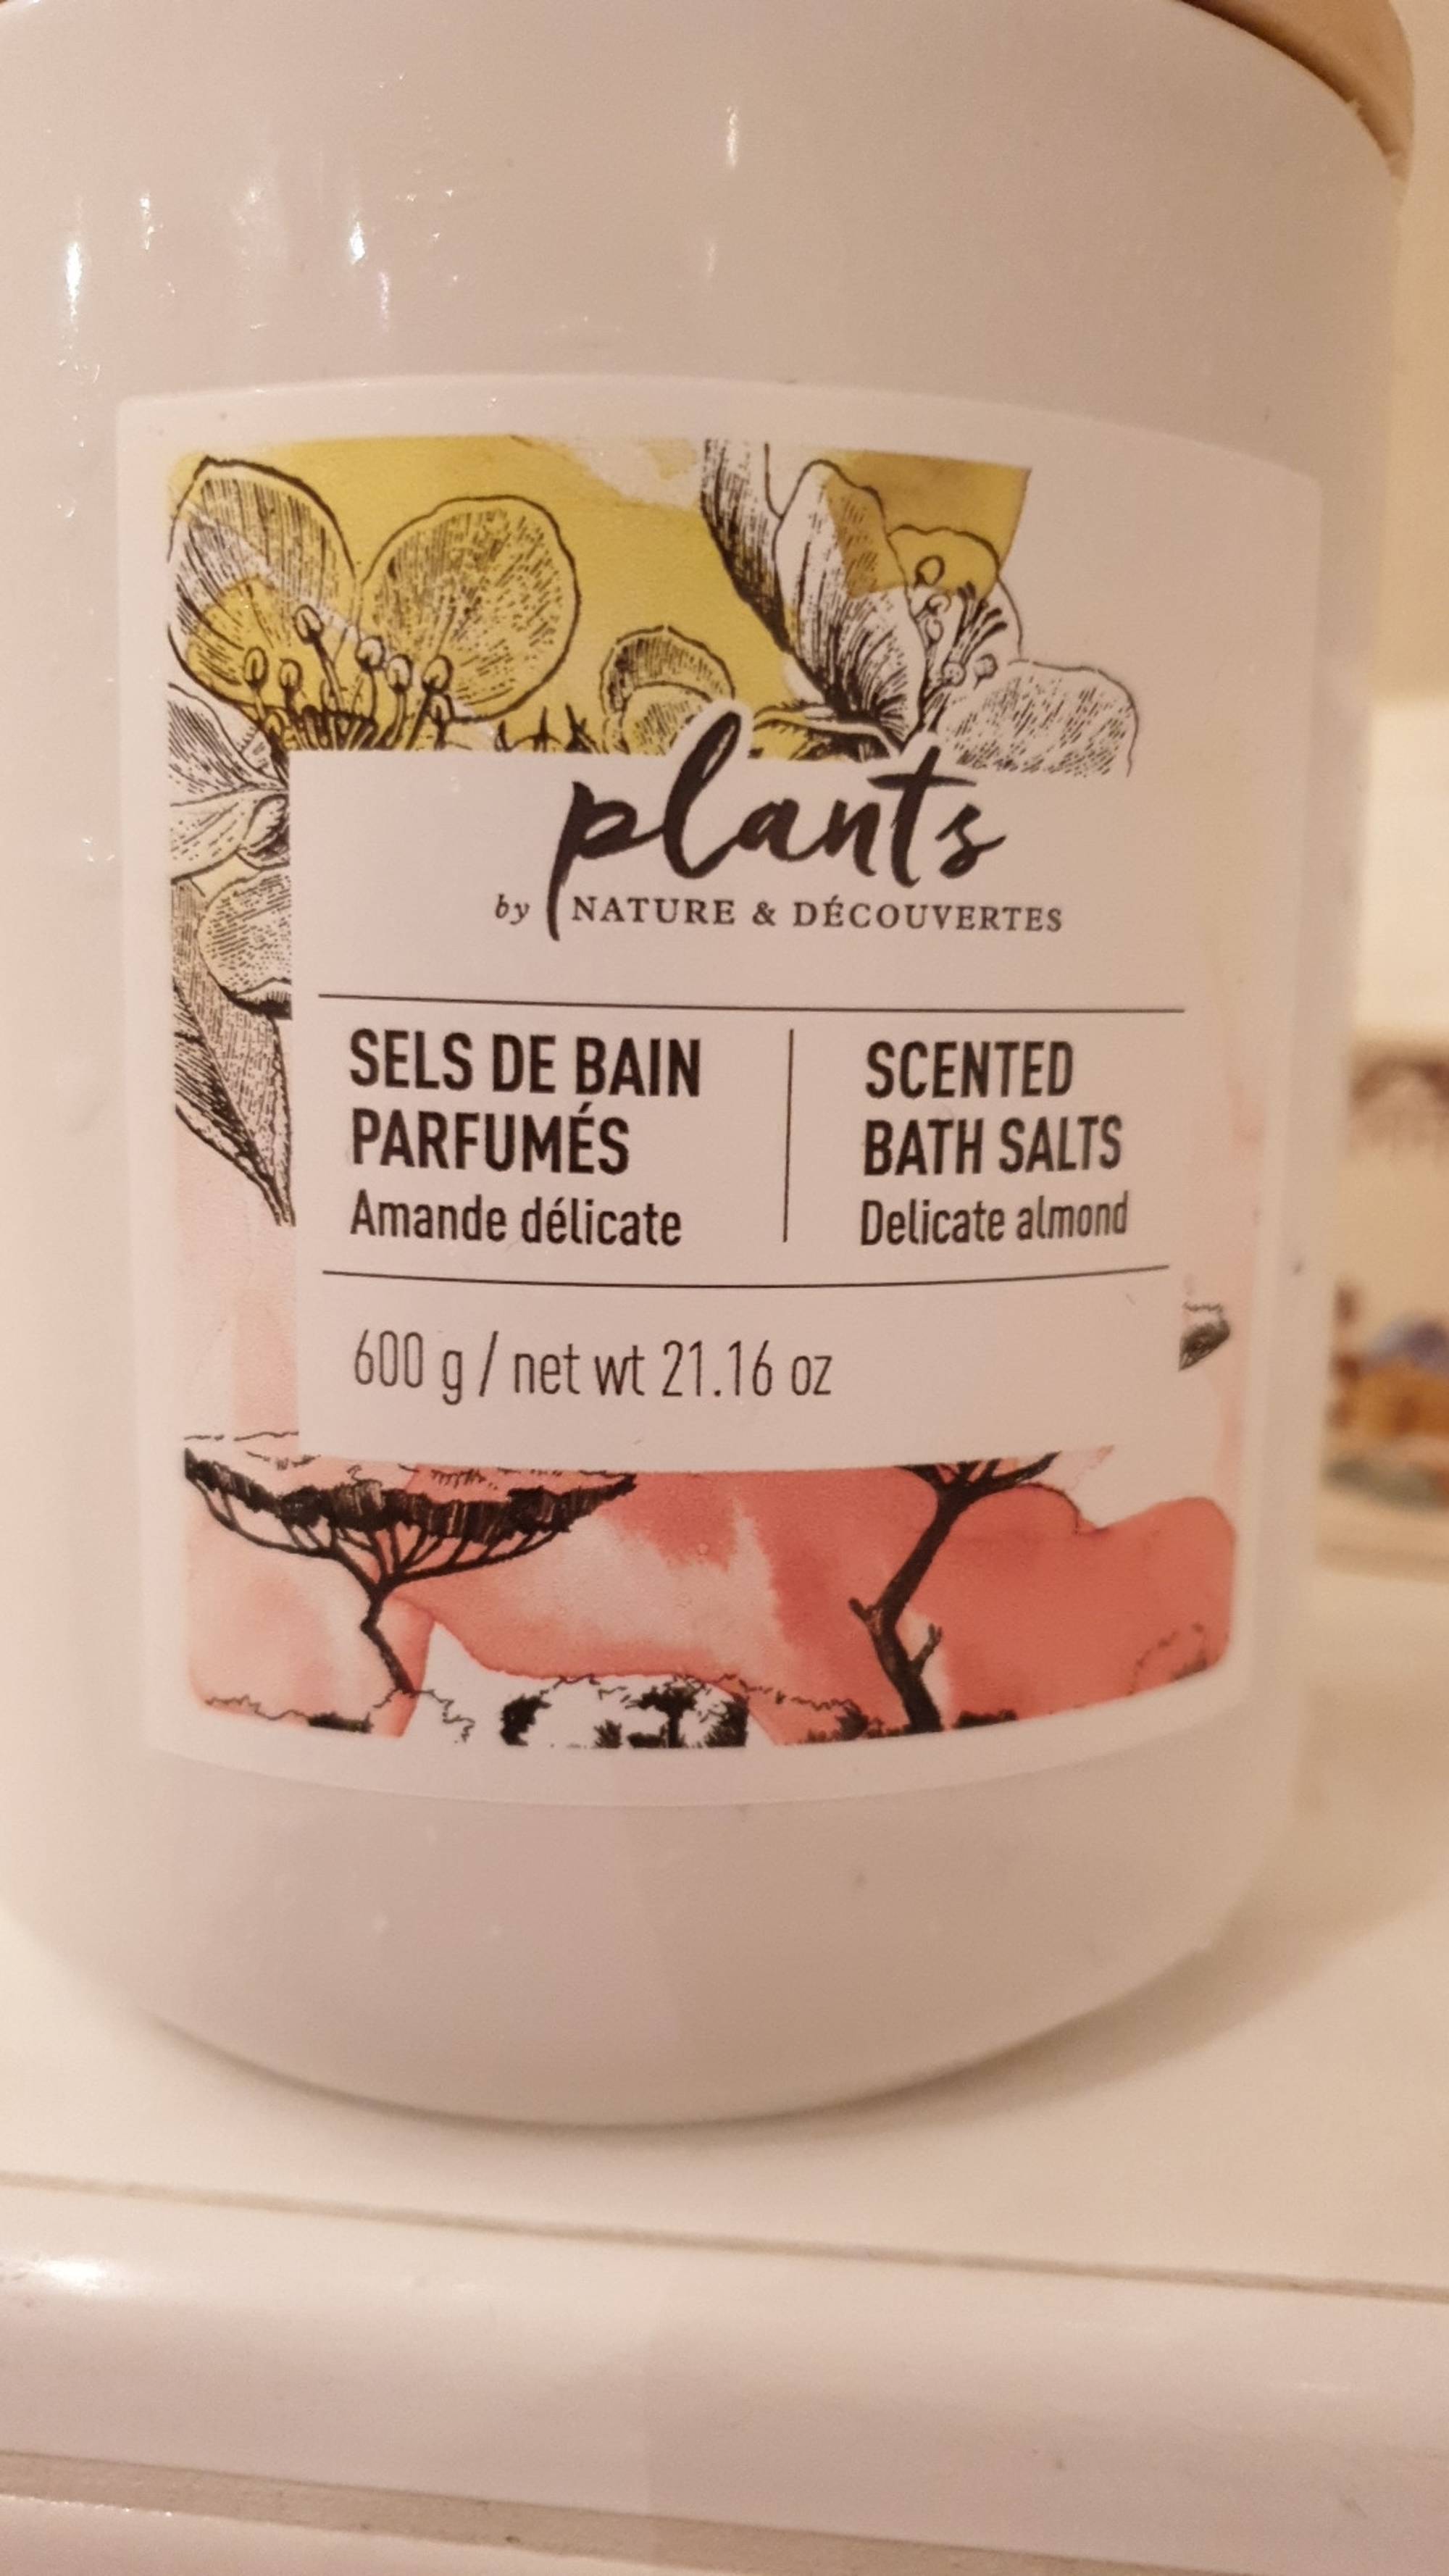 NATURE & DÉCOUVERTES - Plants - Sels de bain parfumés